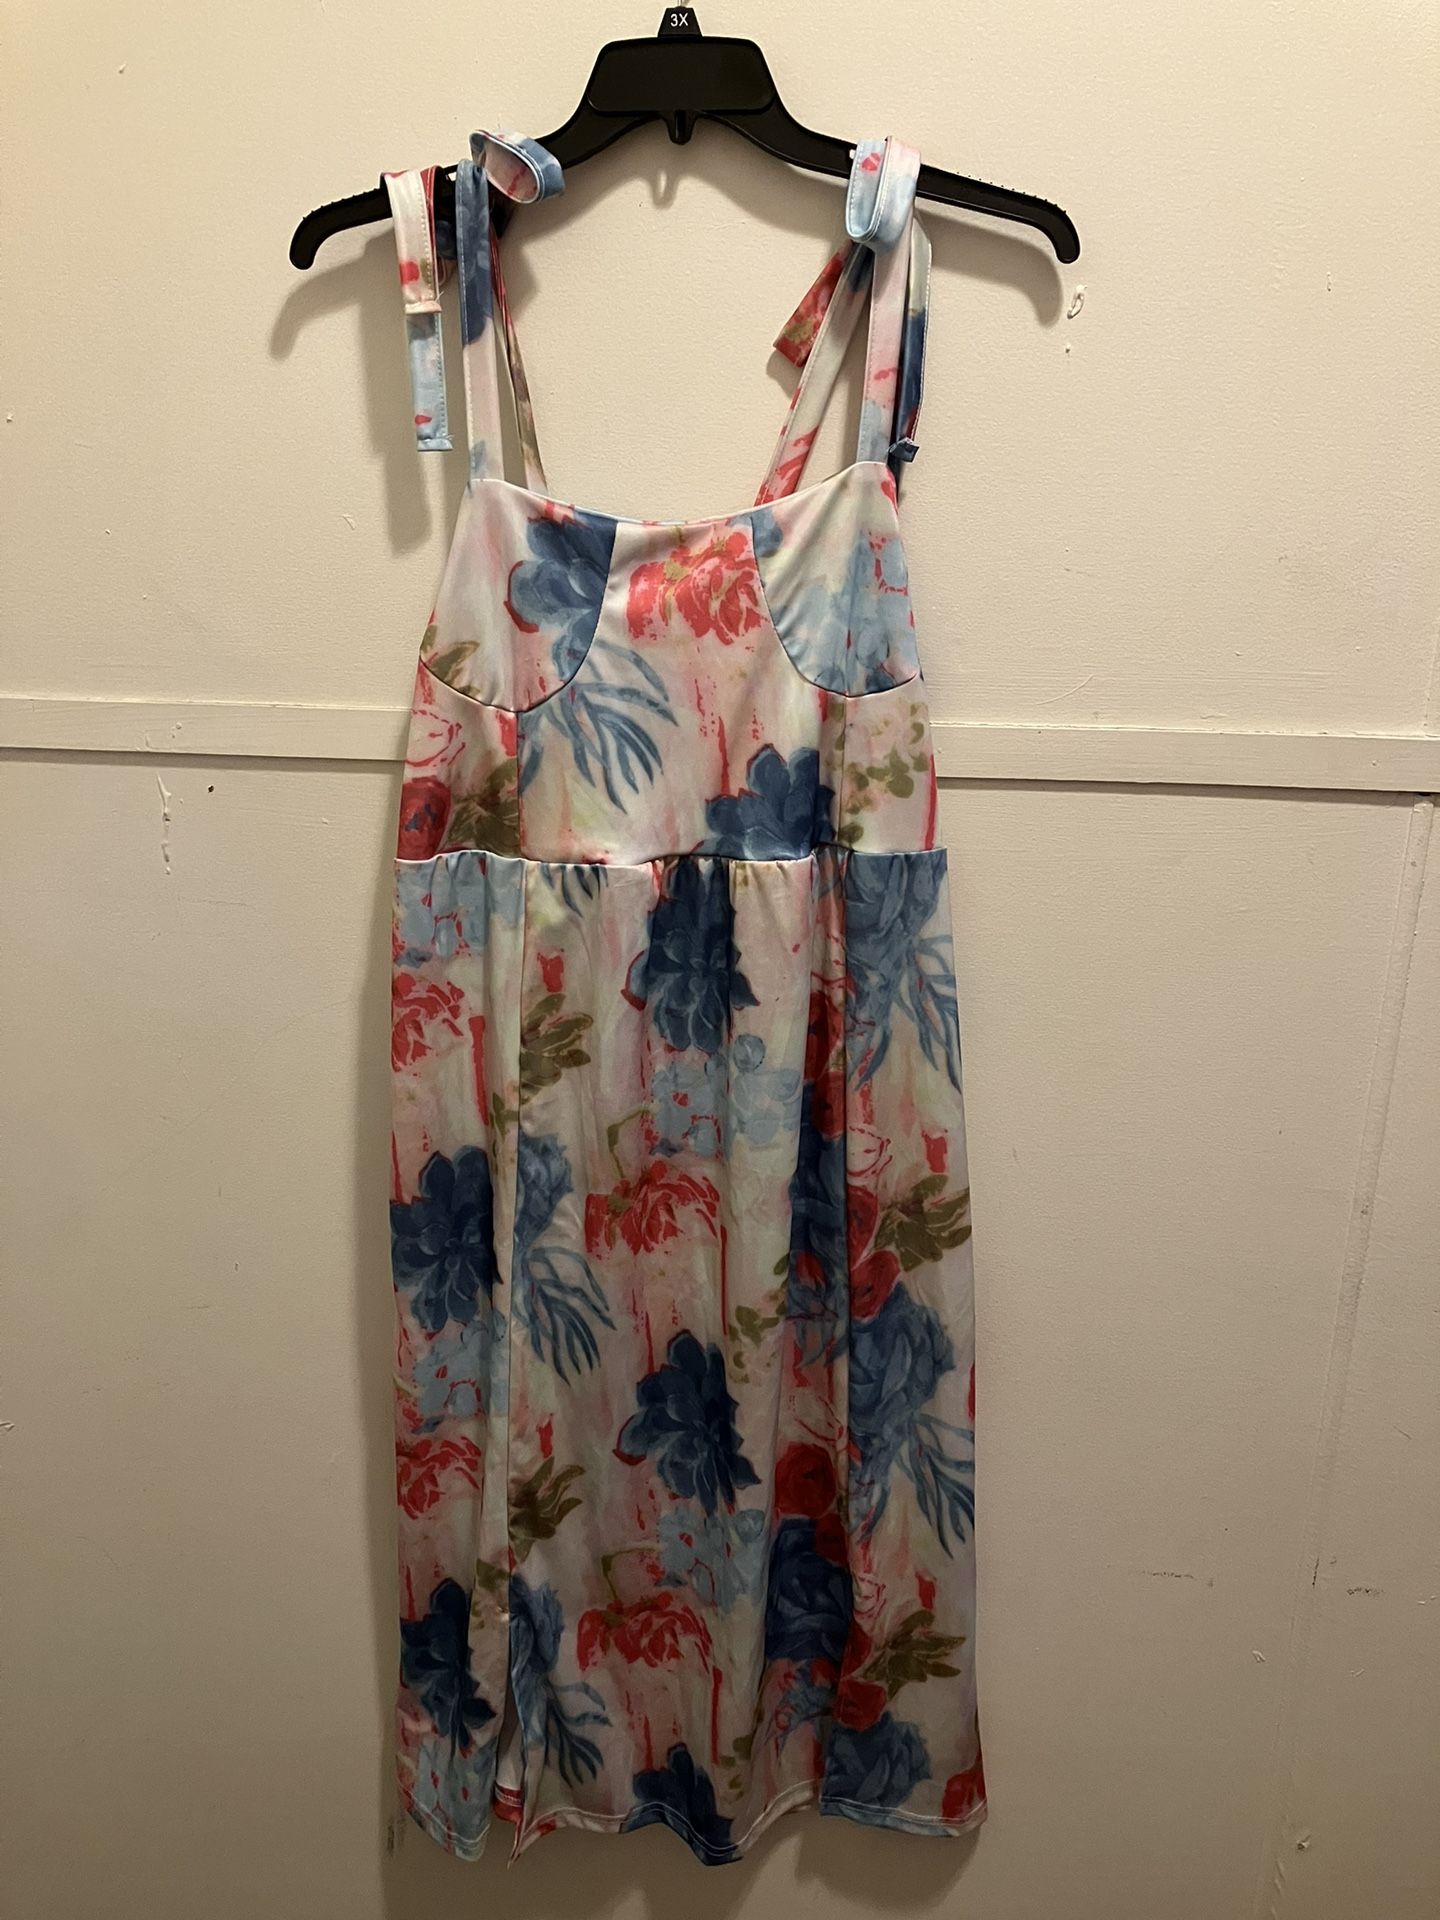 Blue + Pink Maxi Dress - Size L